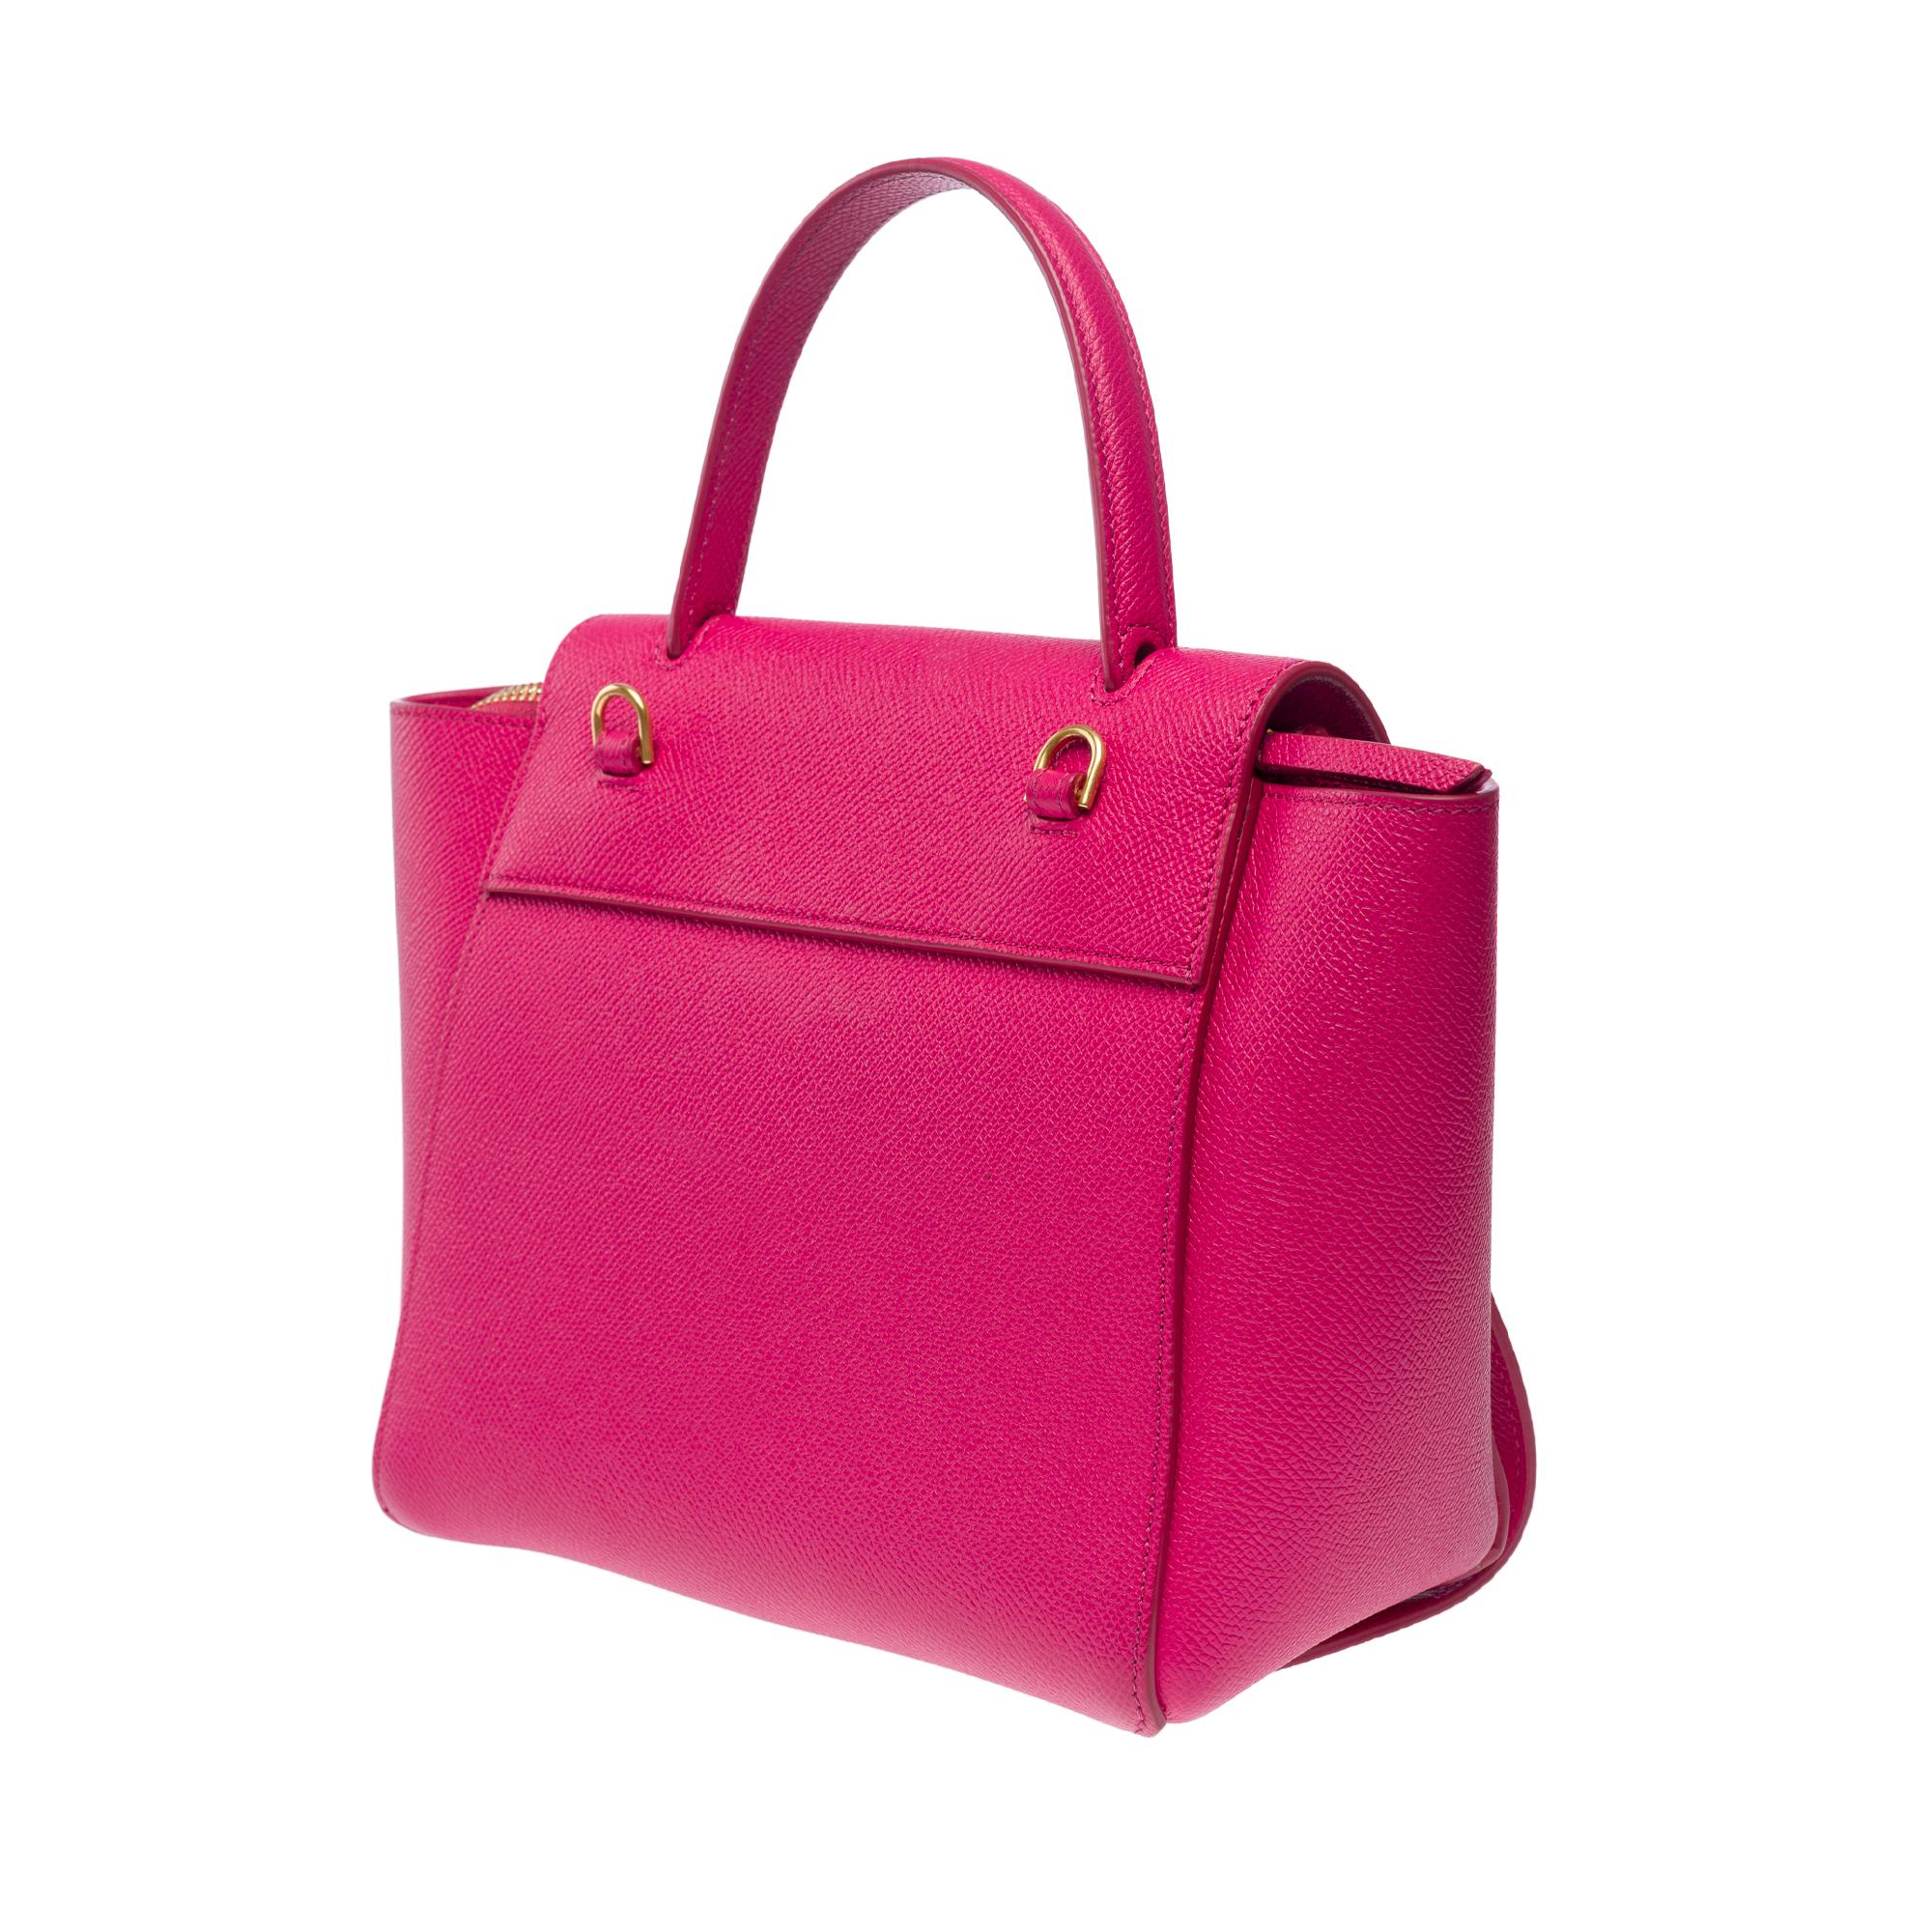 Celine Belt Nano handbag strap in pink calf leather, GHW 3